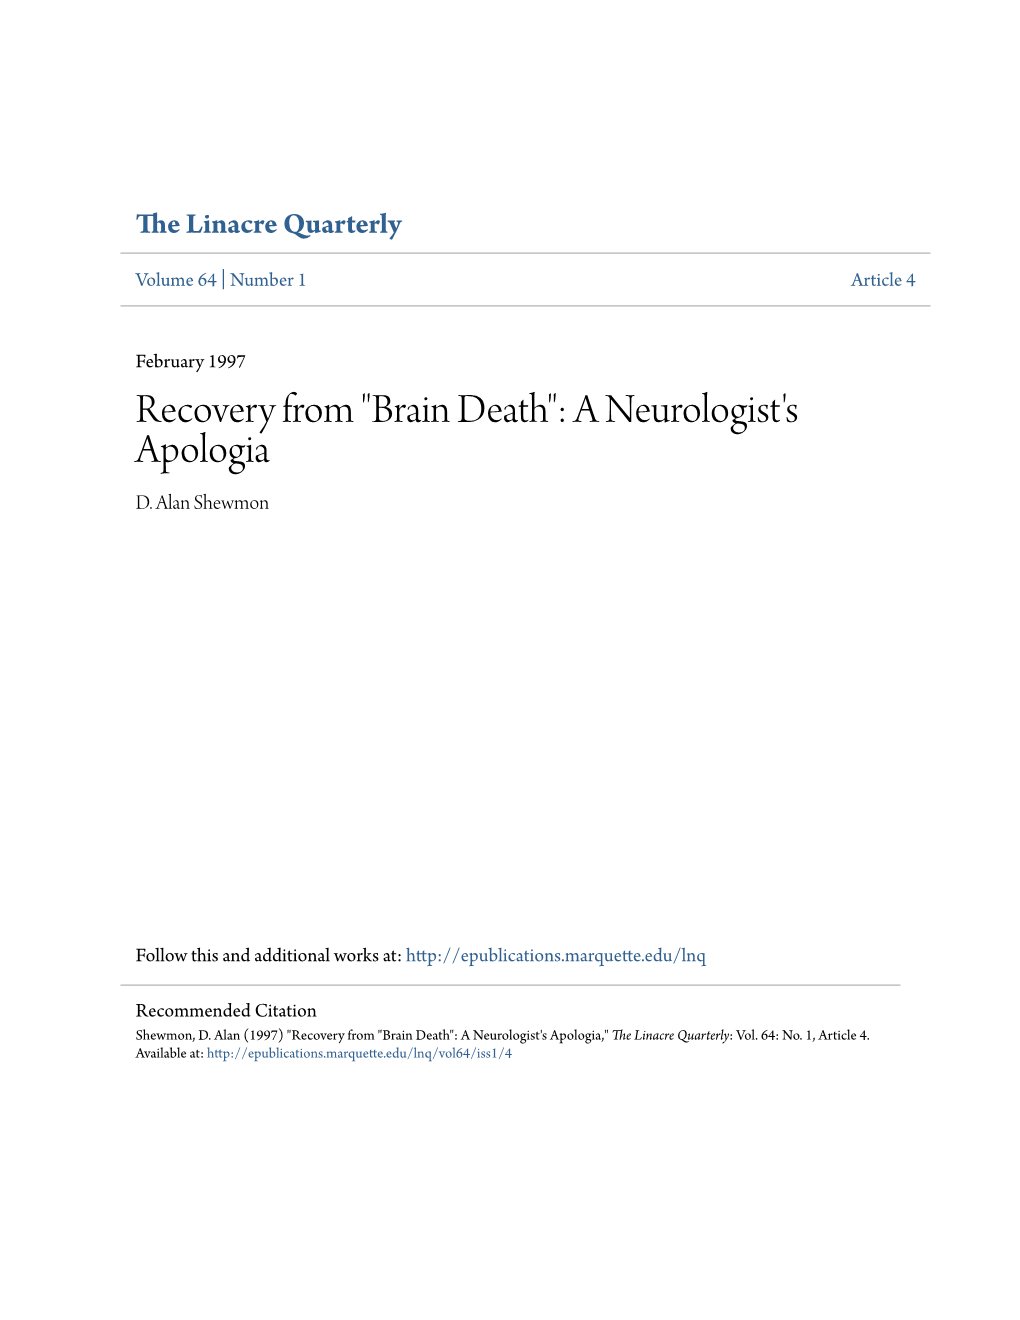 Brain Death": a Neurologist's Apologia D